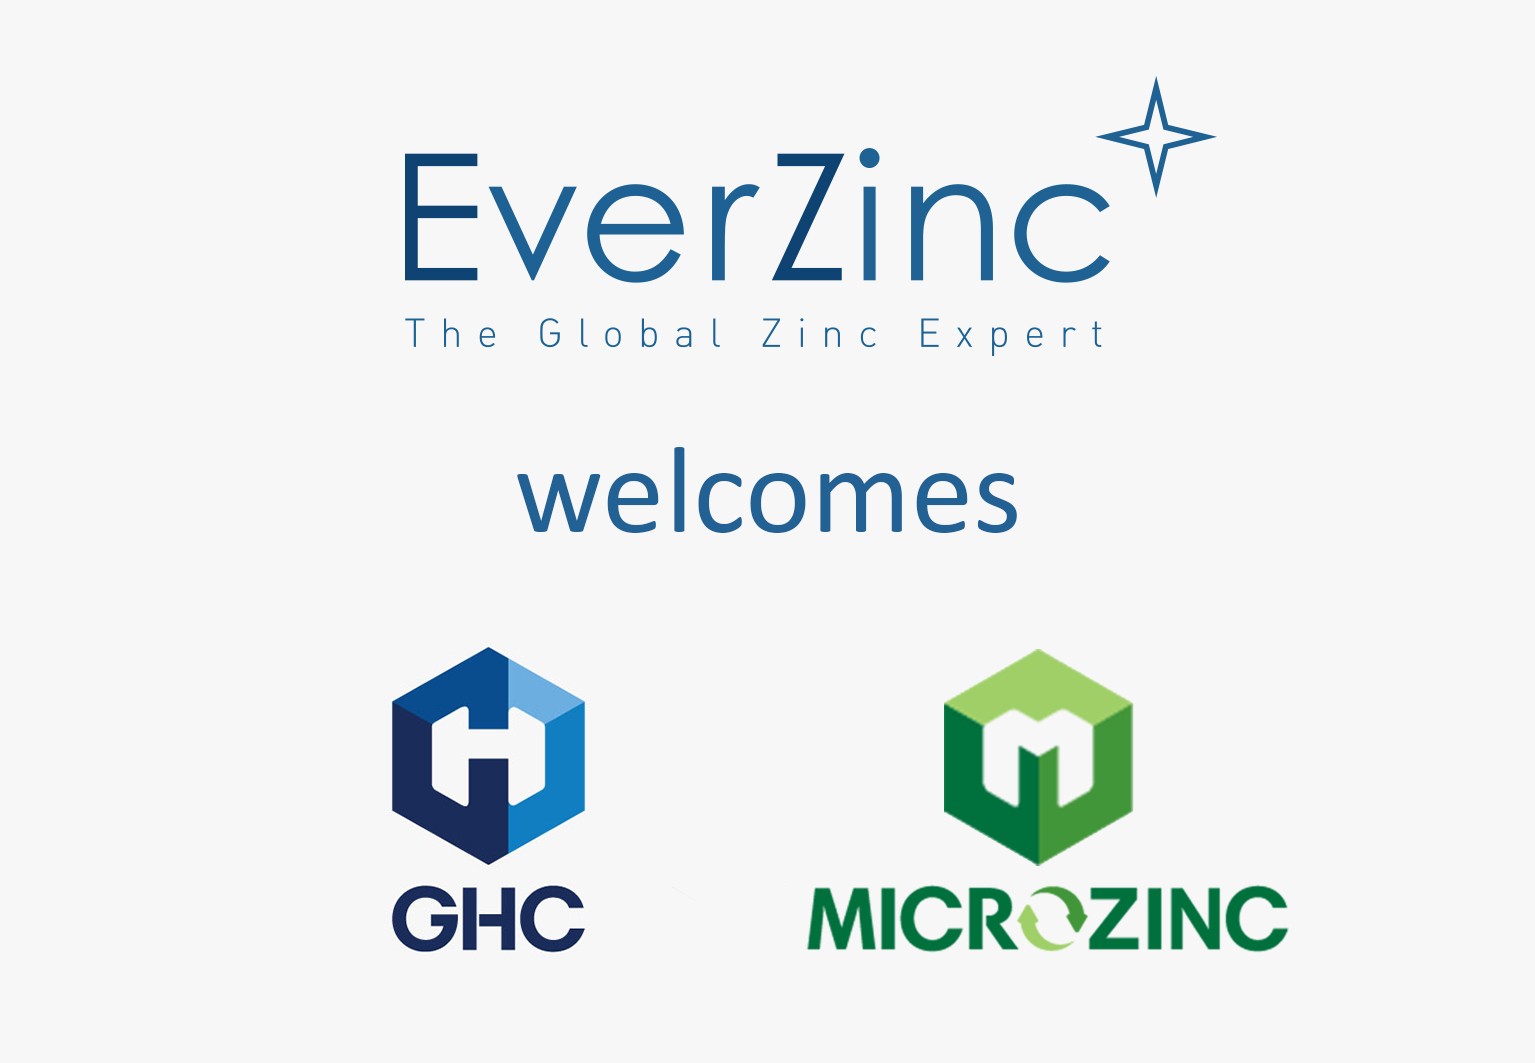 EZGHC+microzinc